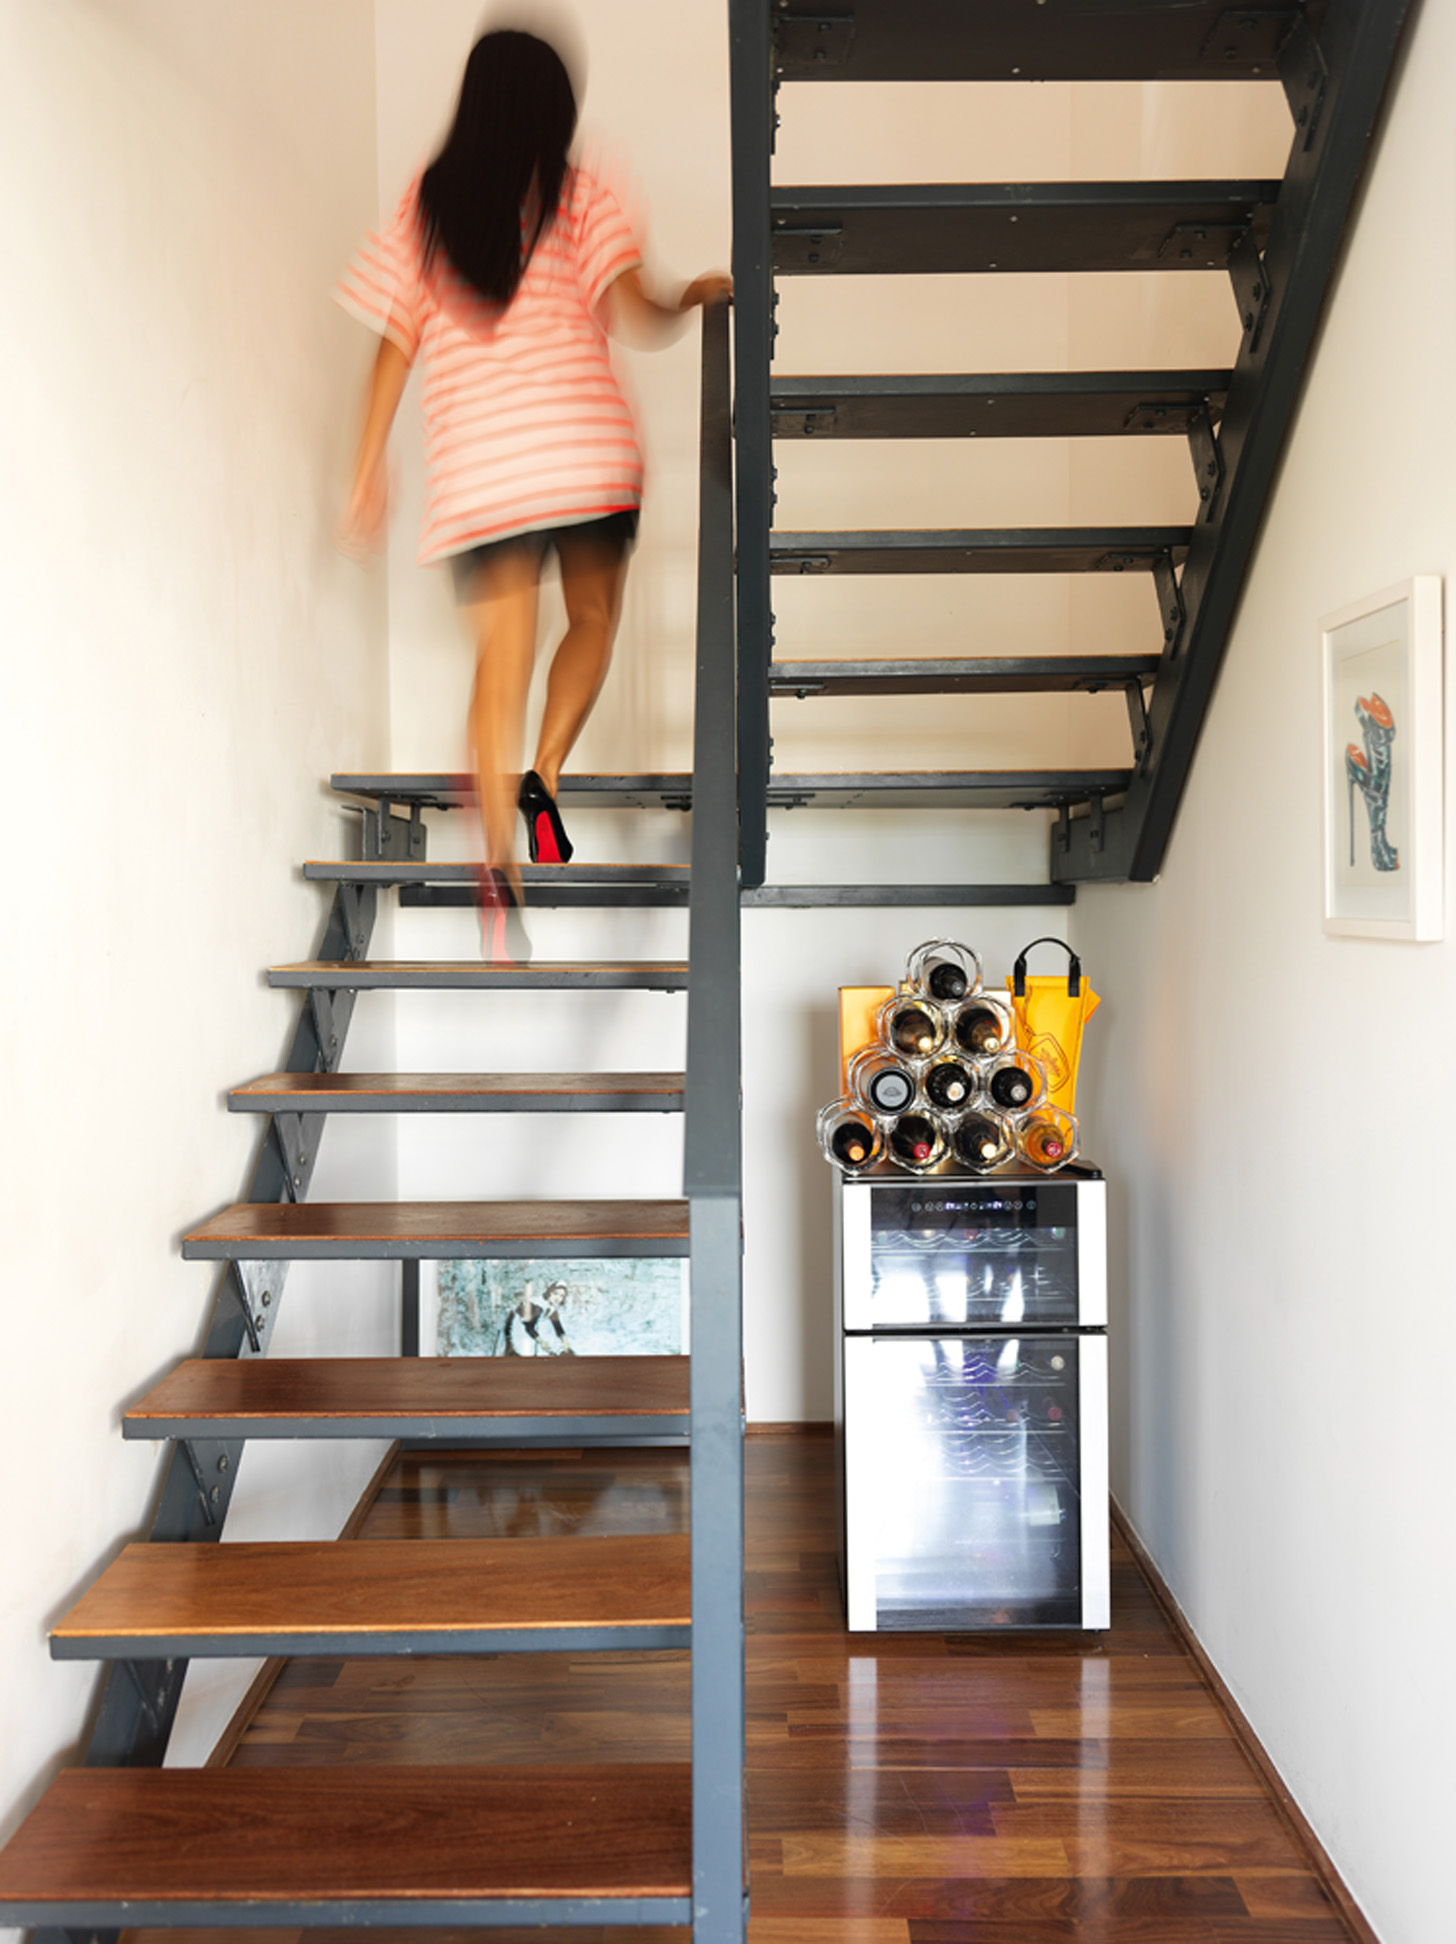 Original: A escada é do projeto original do apartamento e serve de adega do casal